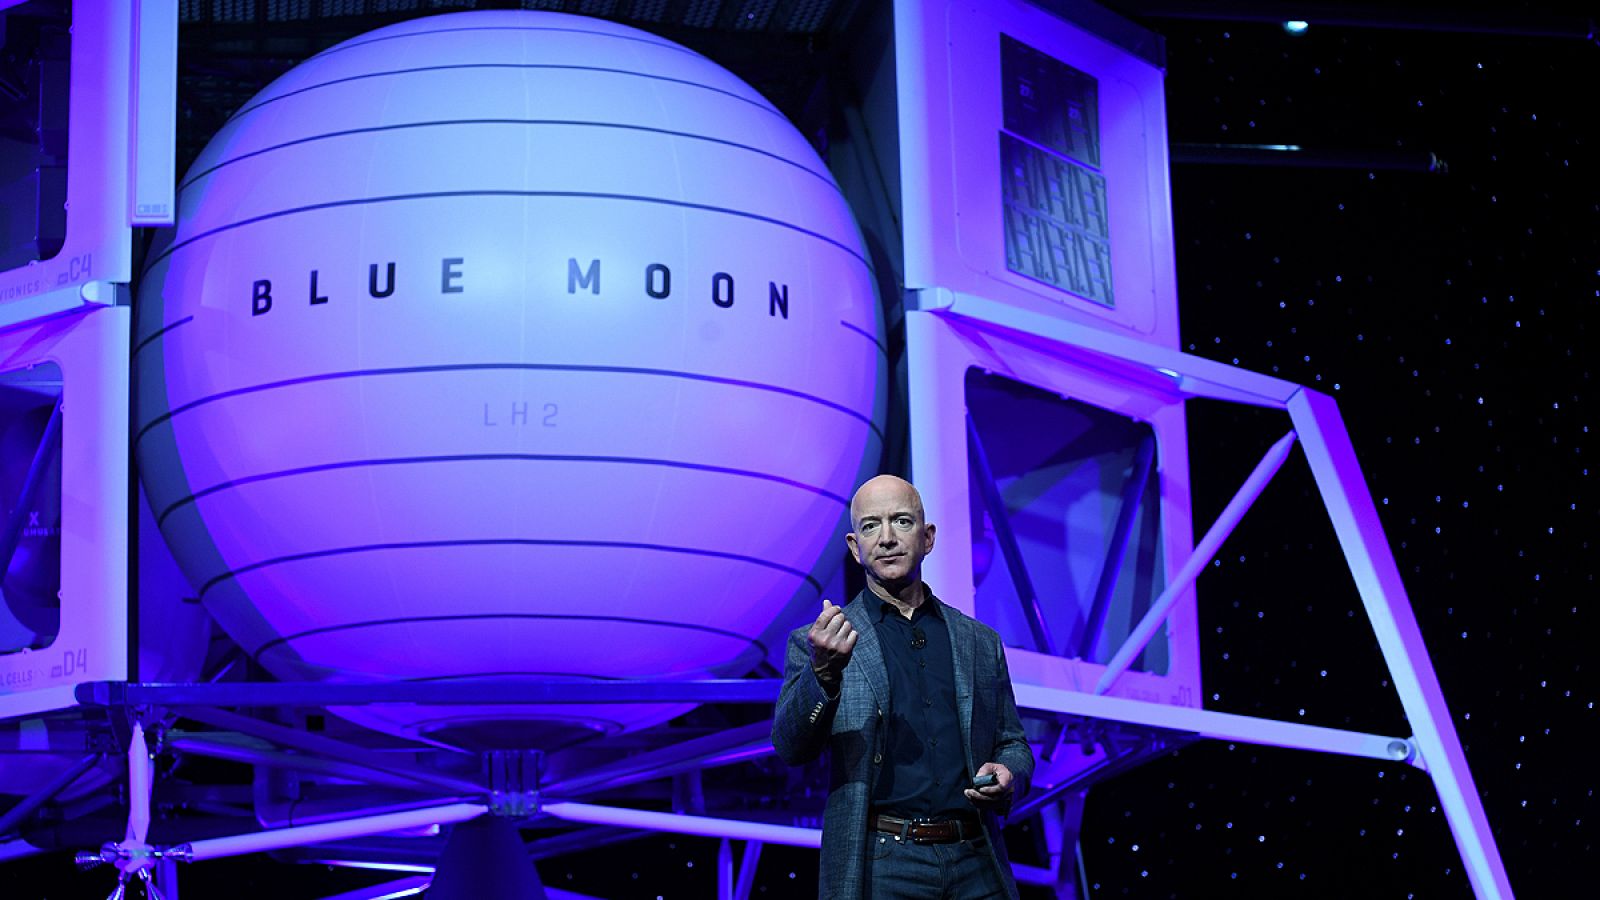 El dueño de Amazon presenta un modelo de nave para posarse en la Luna